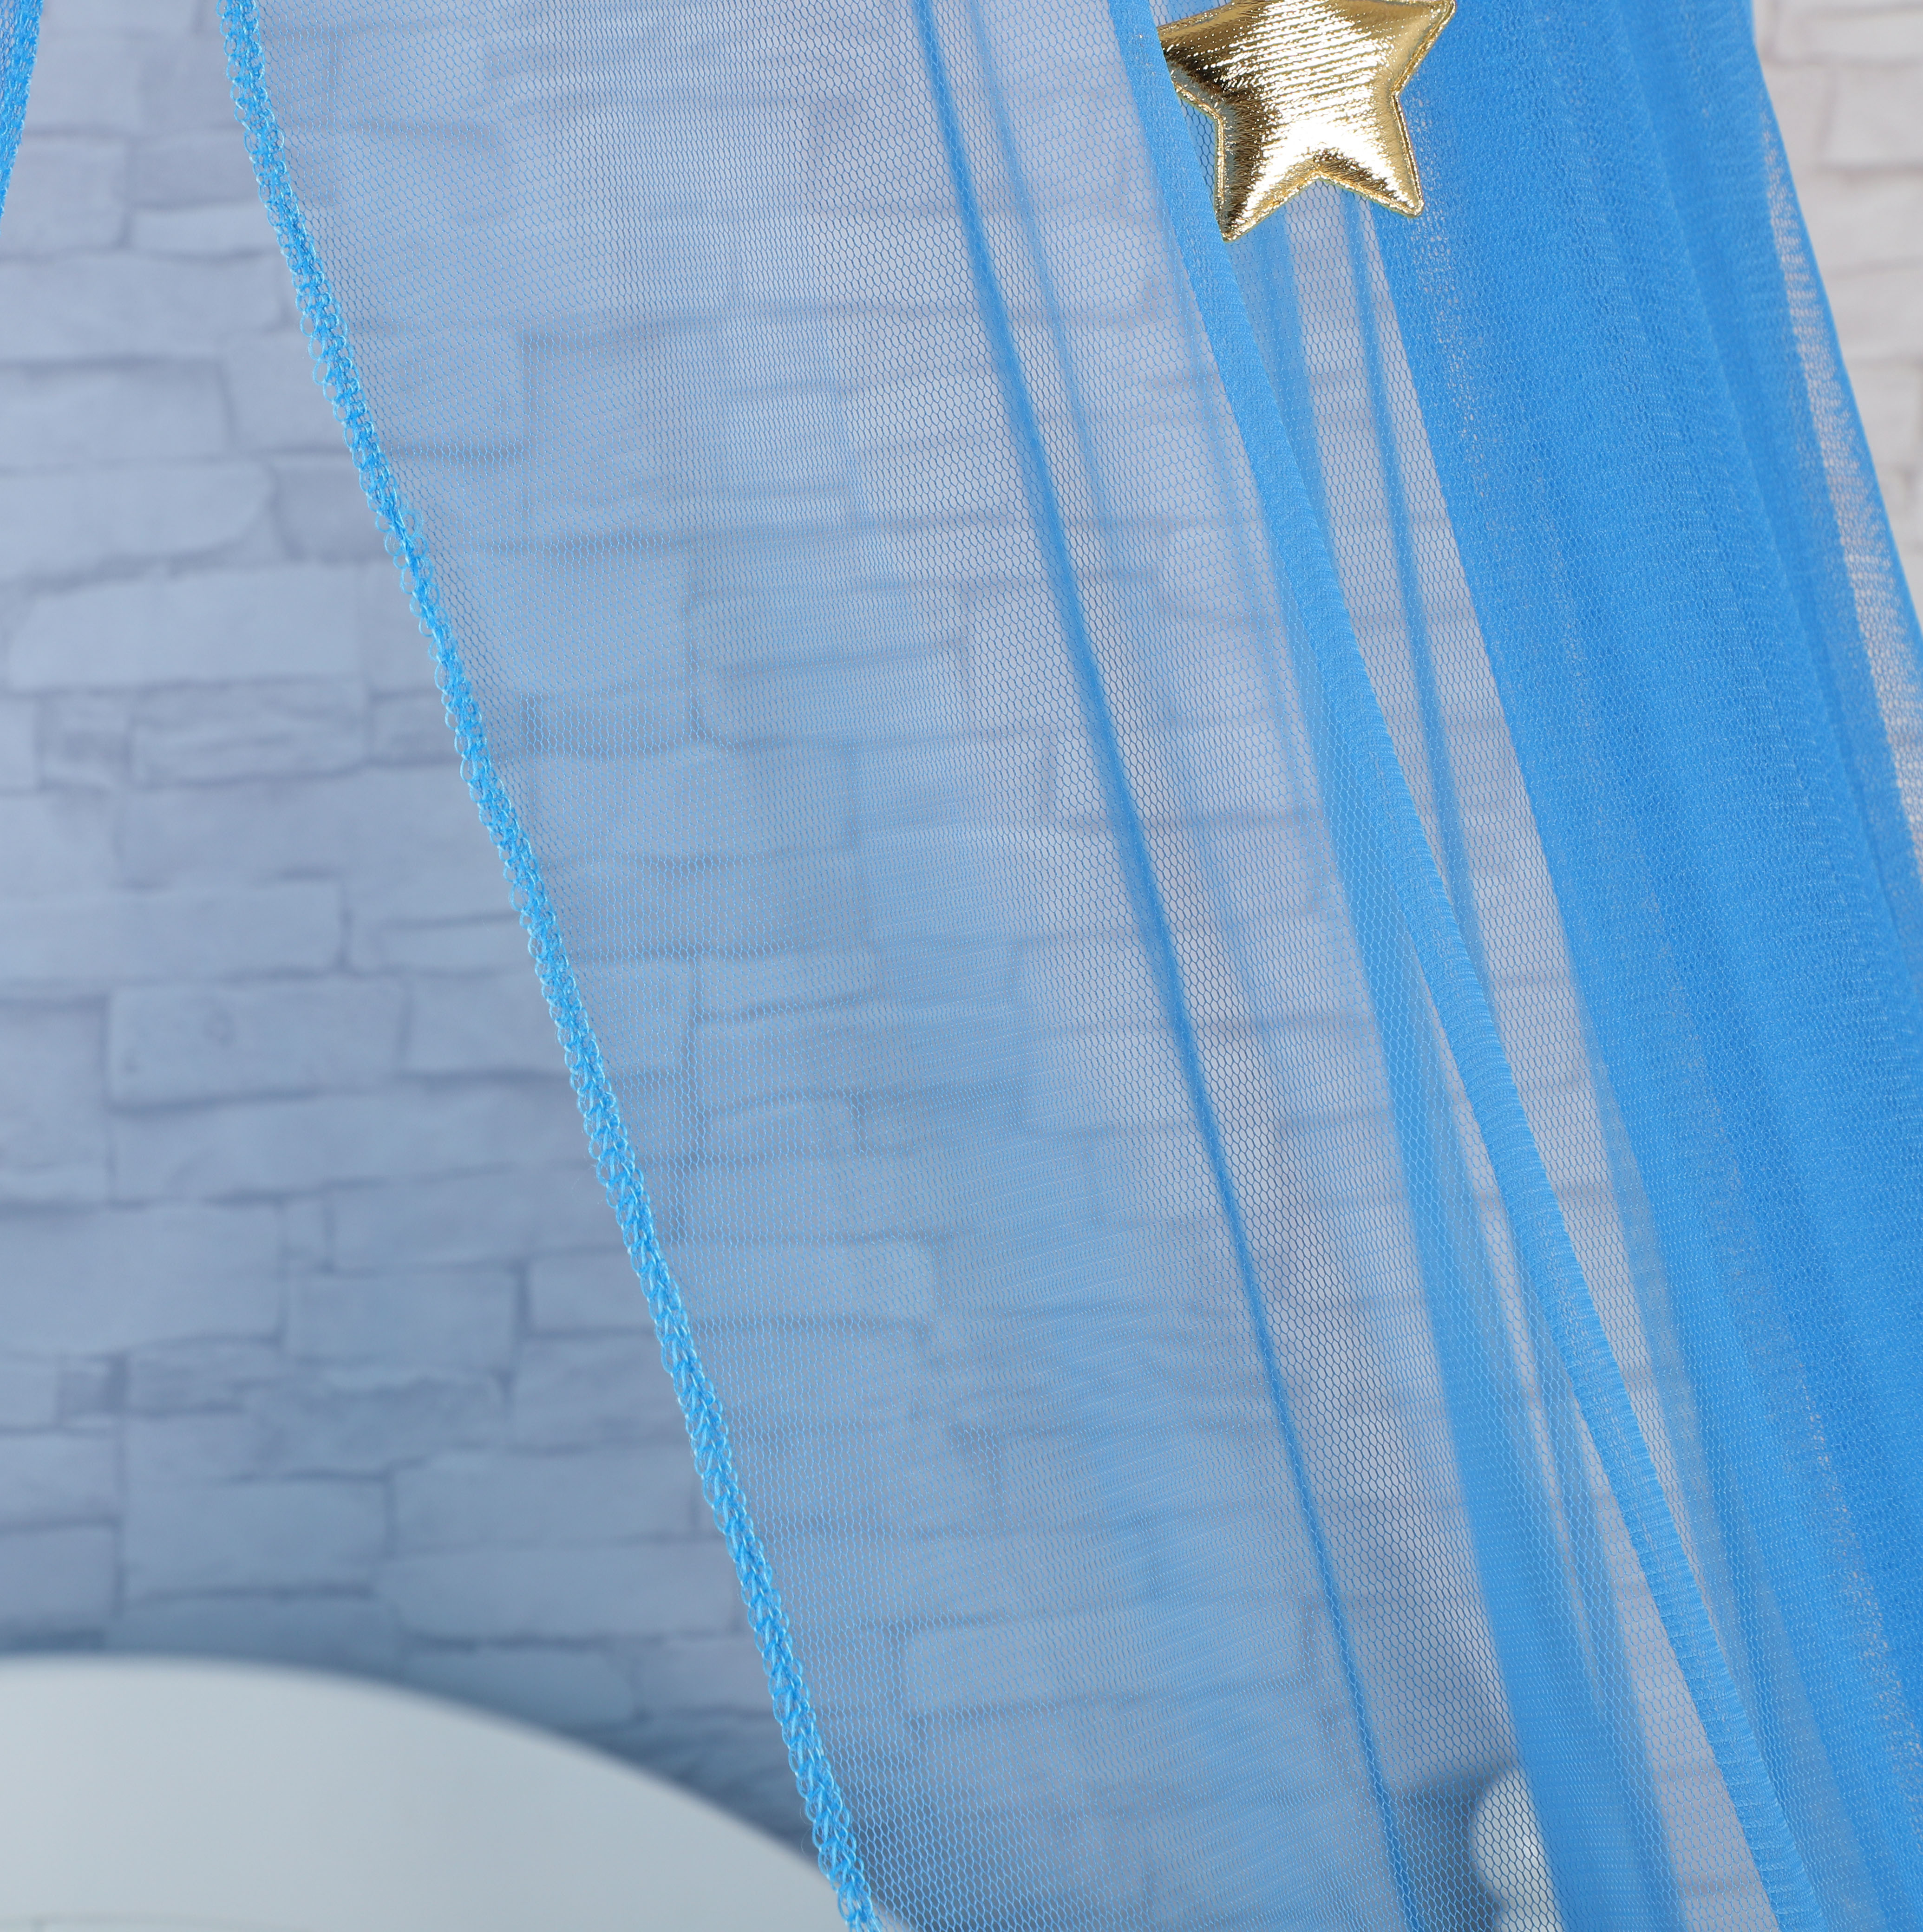 2020 Beliebter Stil Gloden Stars Dekoration Rundes blaues hängendes Moskitonetz